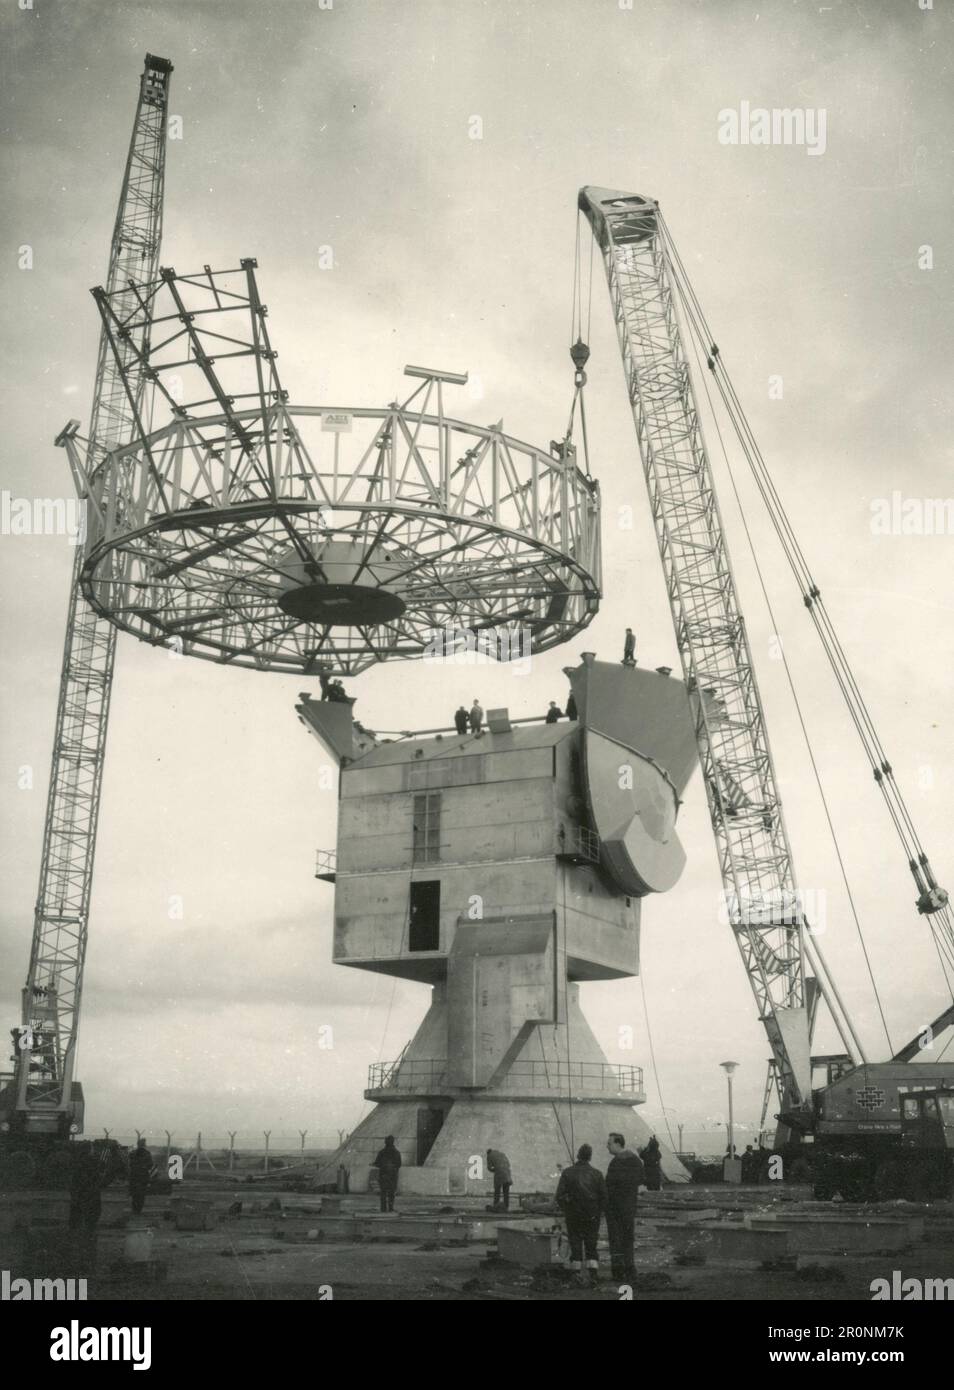 Radio telescope struttura sollevata in un pezzo, Chimbolton, Inghilterra 1966 Foto Stock